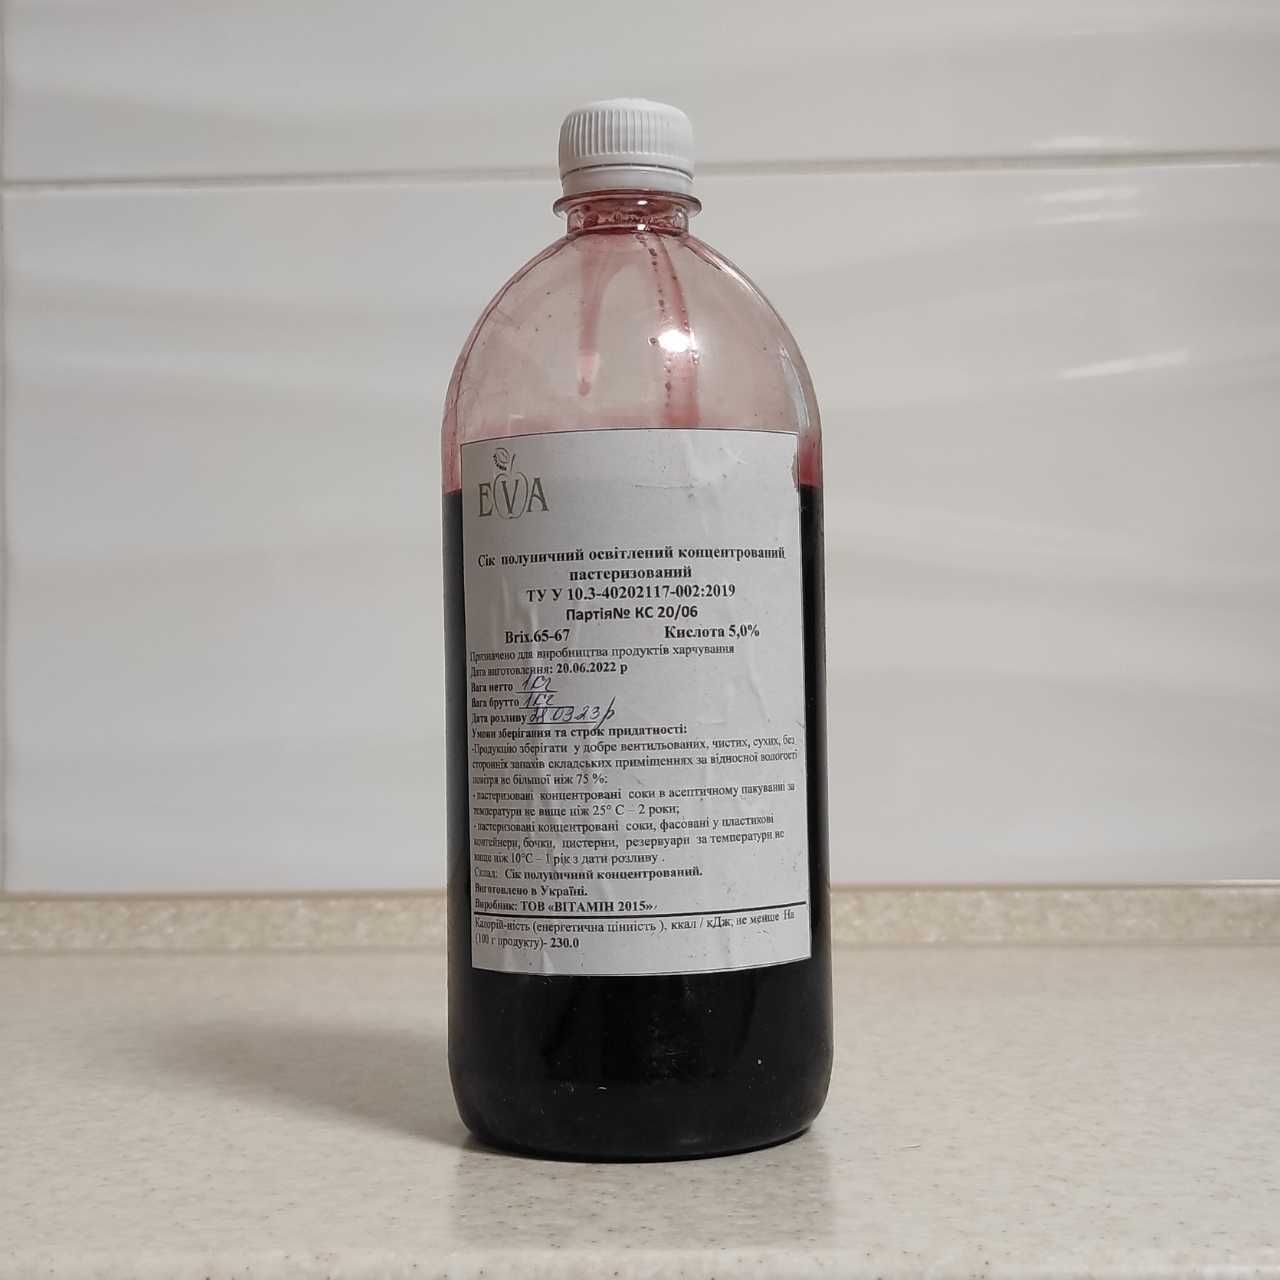 Концентрированный клубничный сок (65-67 ВХ) бутылка 1 кг / 0,76 л